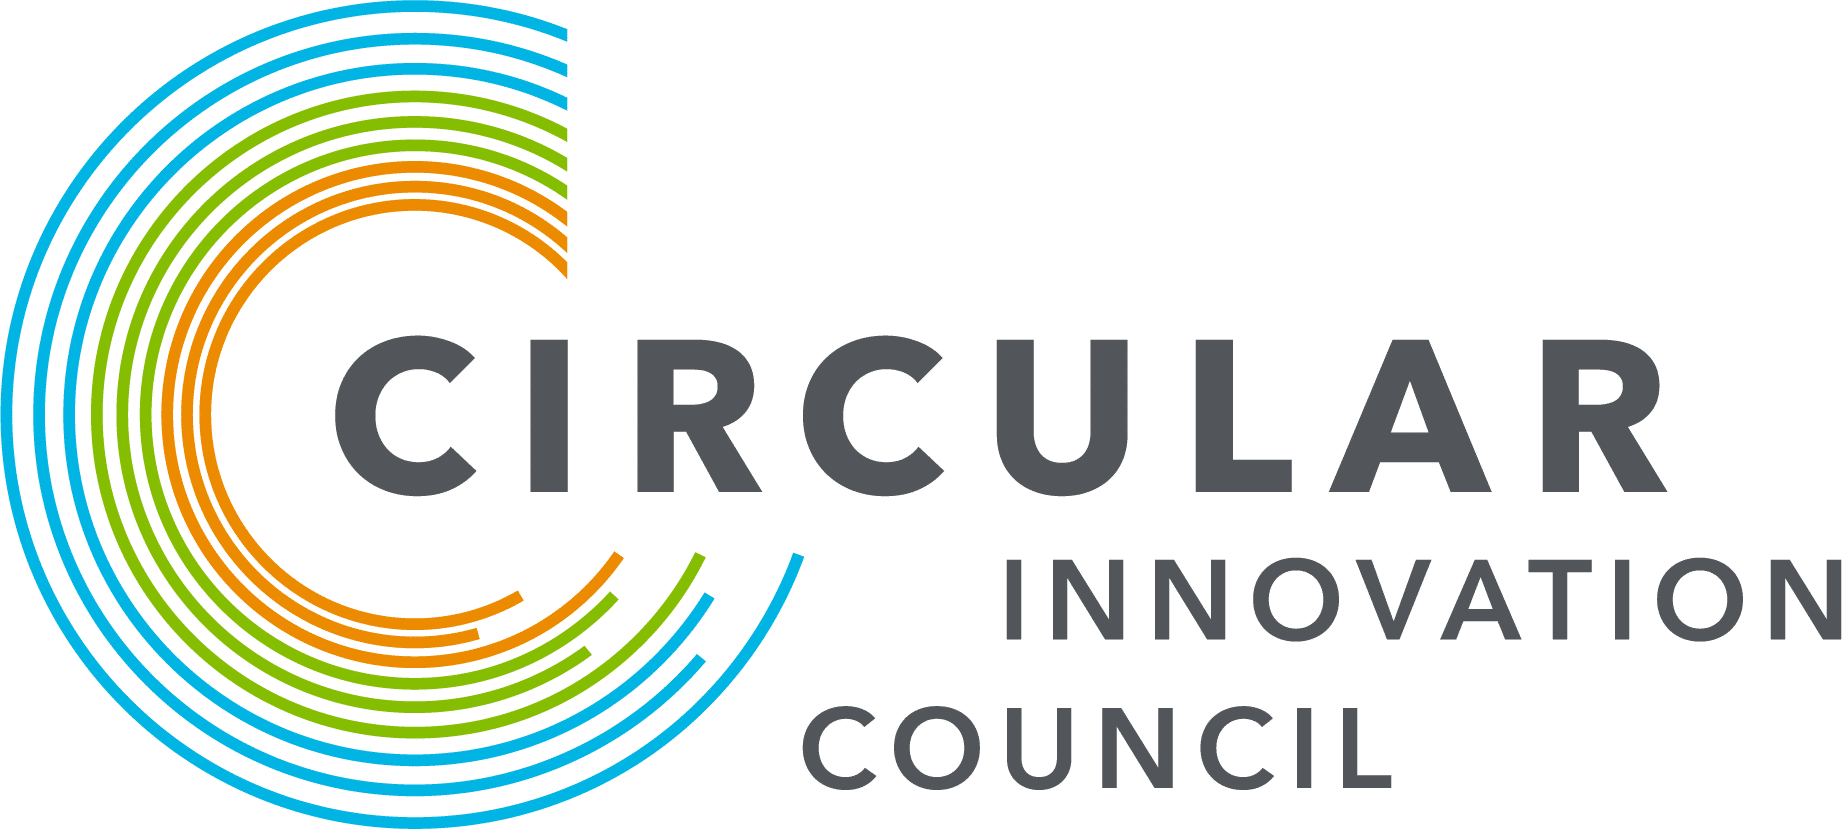 Circular Innovation Council Auto Heaven